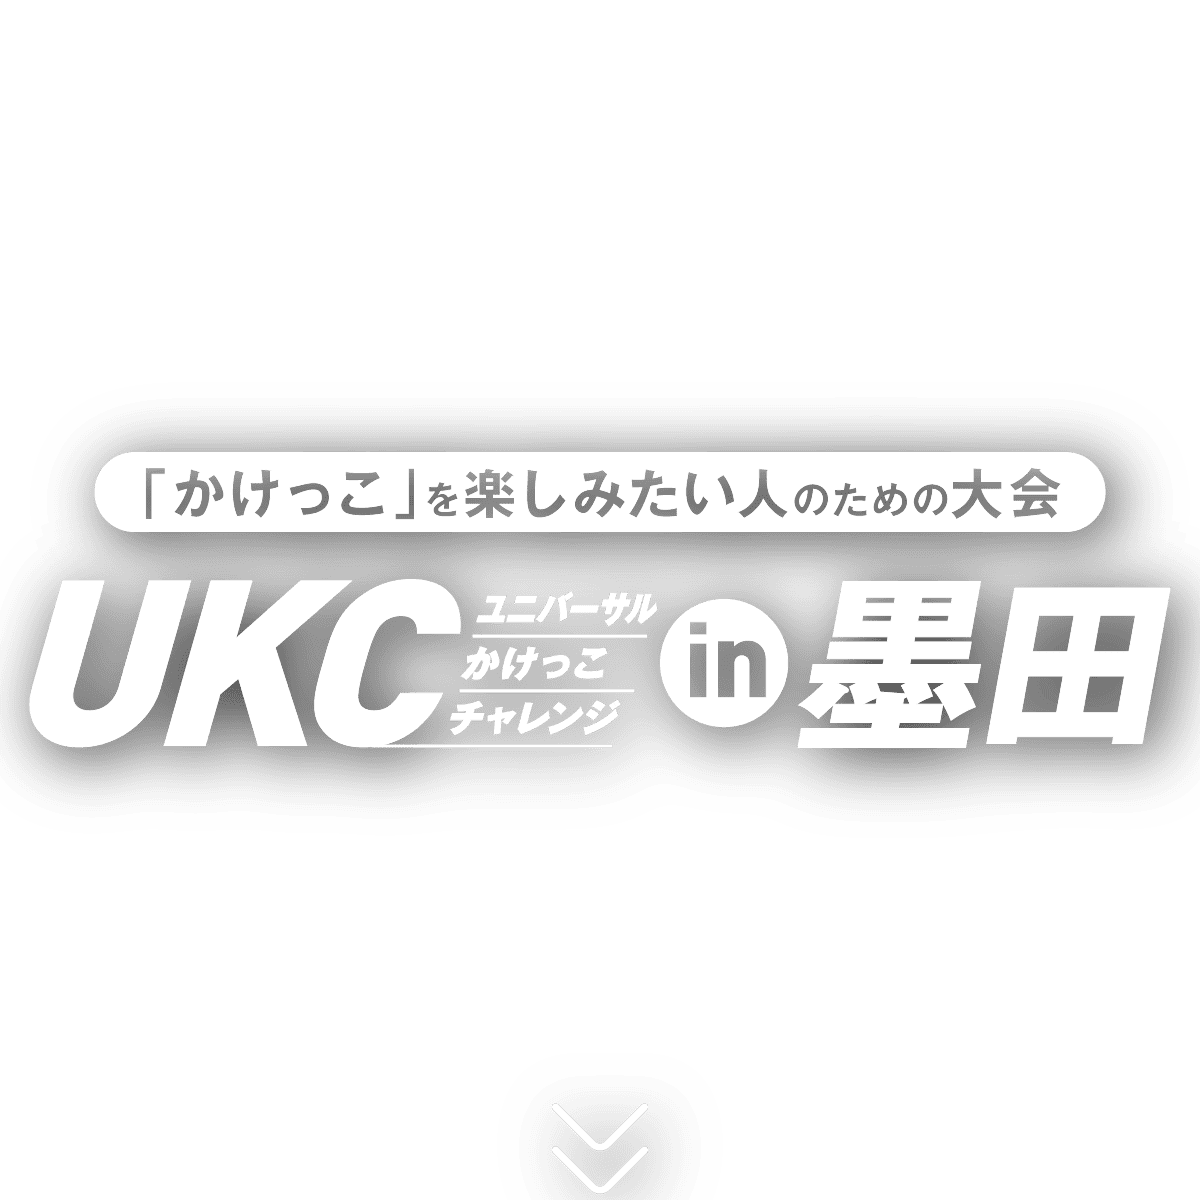 「かけっこ」を楽しみにたい人のための大会。ユニバーサル・かけっこ・チャレンジ（UKC）in 墨田